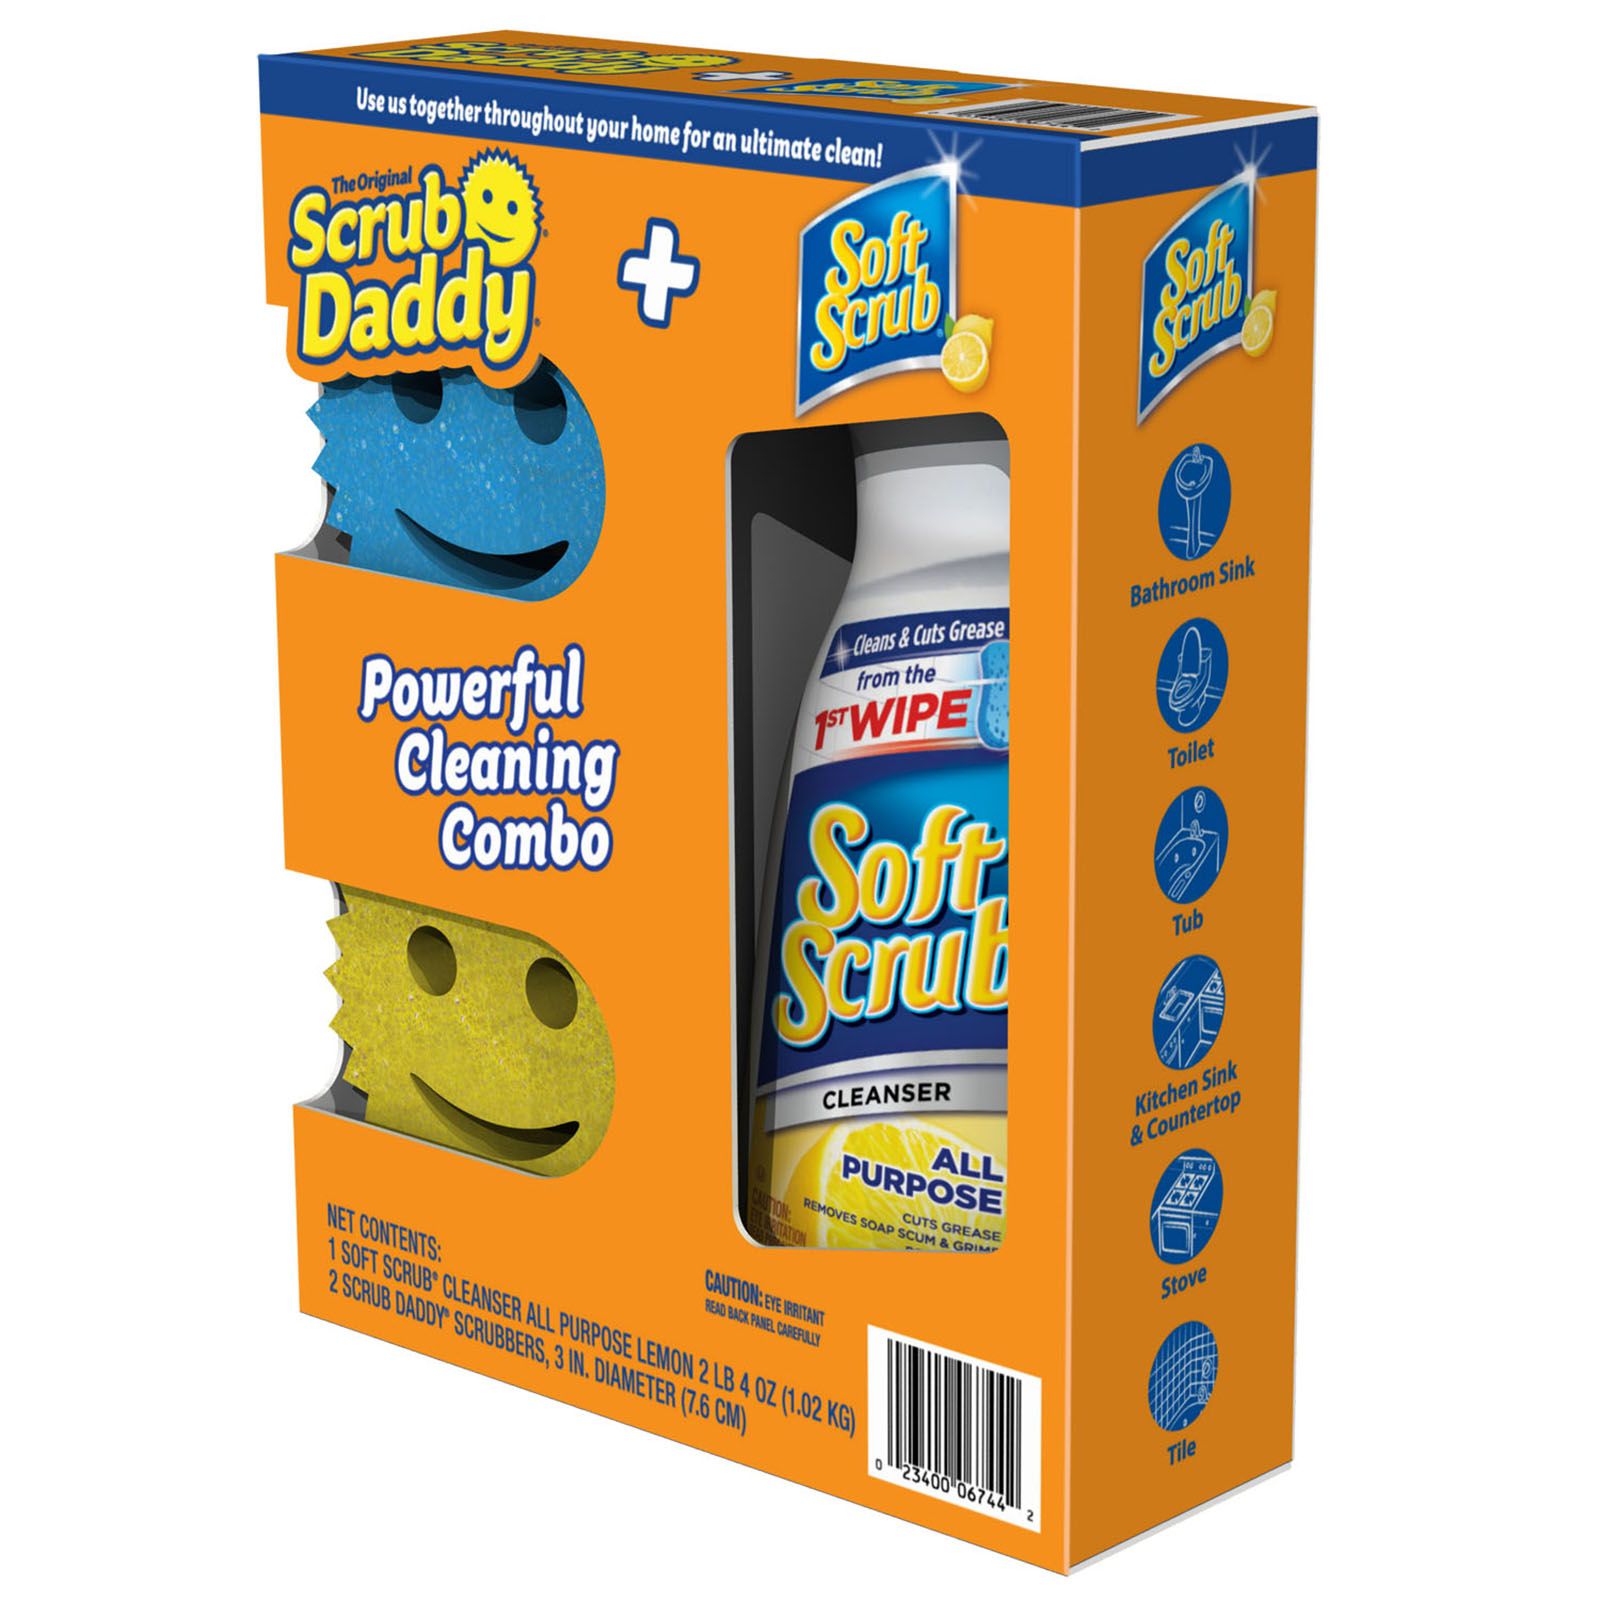 Scrub Daddy Daddy Caddy Sponge 1 Pk